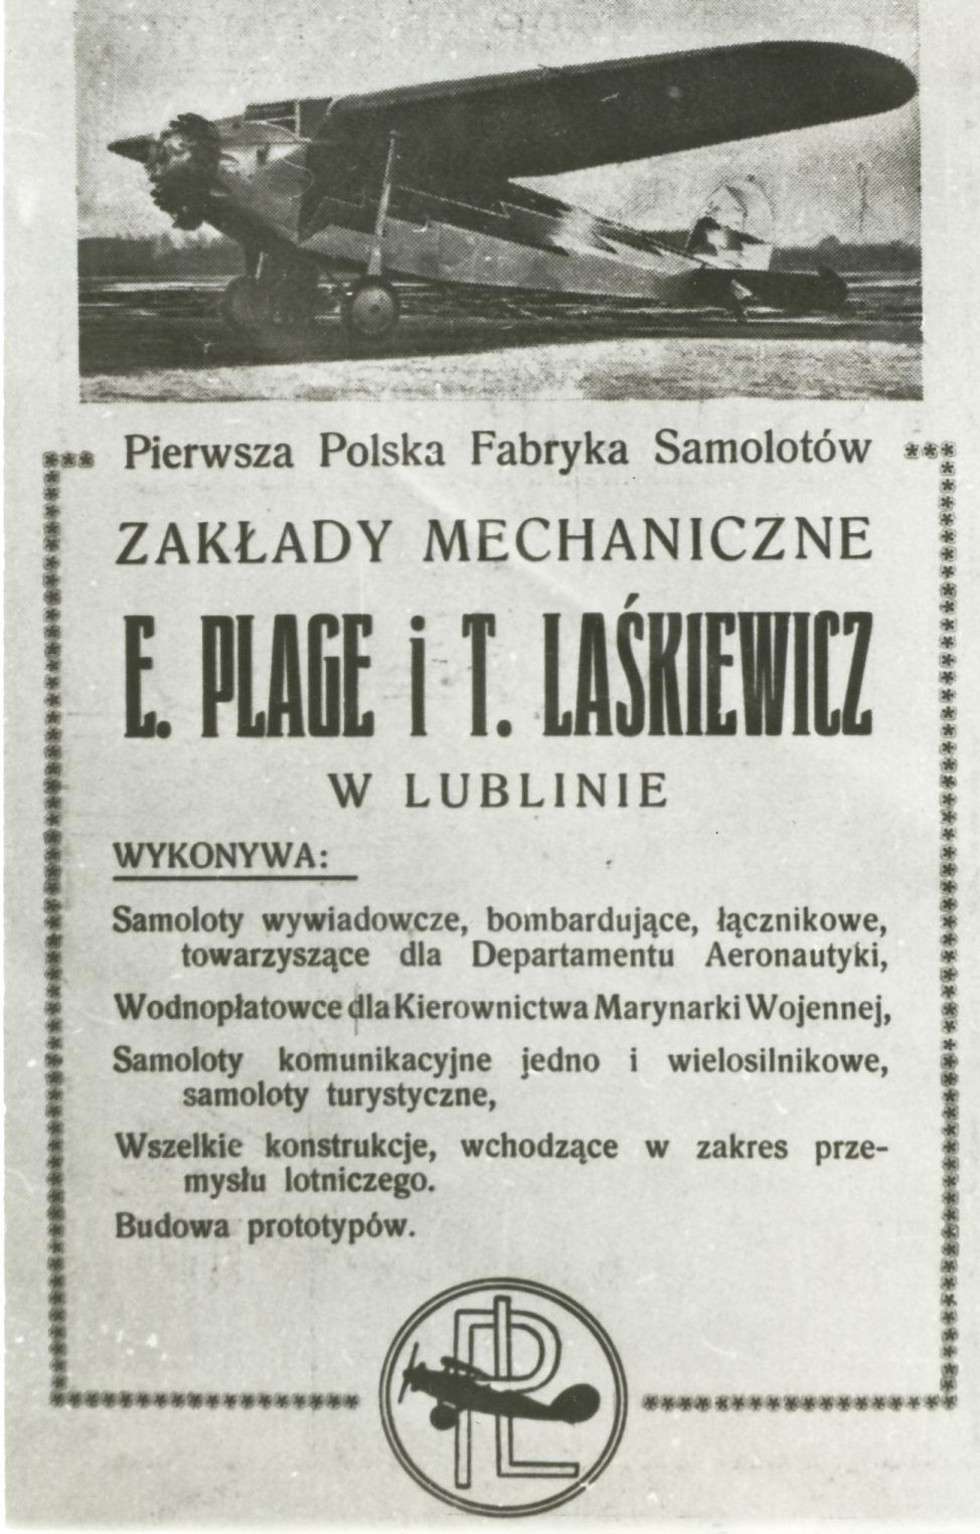  <p class="Normal">Pierwsze zam&oacute;wienie od rządu polskiego zatwierdzono 17 lutego 1920. Przewidywało ono produkcję 100 samolot&oacute;w myśliwskich Ansaldo A-1 Balilla i&nbsp;200 liniowych (rozpoznawczo-bombowych) Ansaldo A-300 na licencji włoskiej. Pierwsze samoloty z&nbsp;zakład&oacute;w w&nbsp;Lublinie były gotowe dopiero latem 1921 &ndash;&nbsp;pierwszy A-300 polskiej produkcji oblatano 15 czerwca 1921.&nbsp;</p>